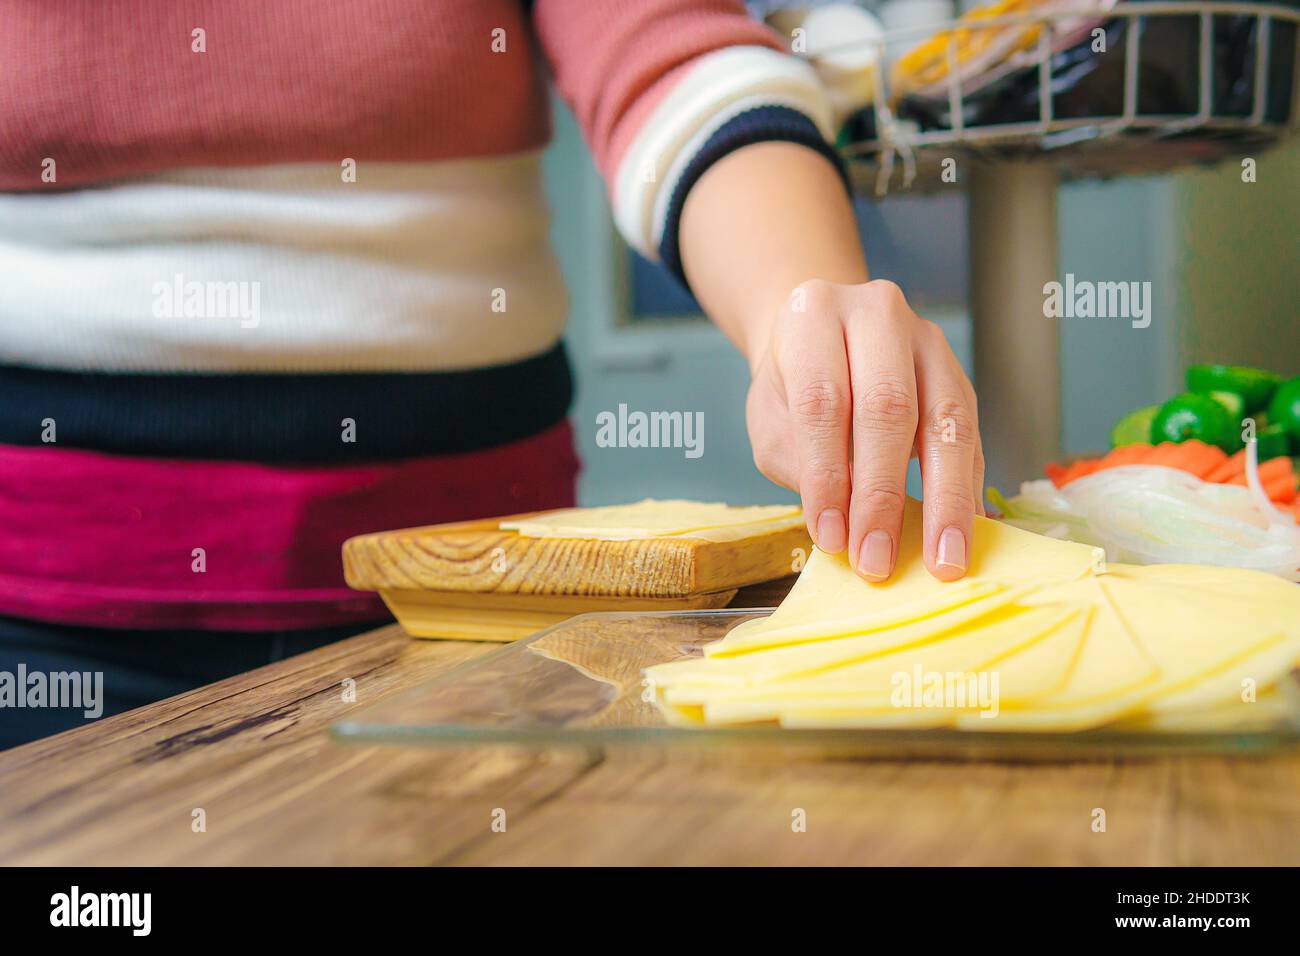 Sul tavolo ci sono fette di formaggio giallo, una mano della donna può essere visto prendere una fetta per sistemarlo o mangiare. Foto Stock